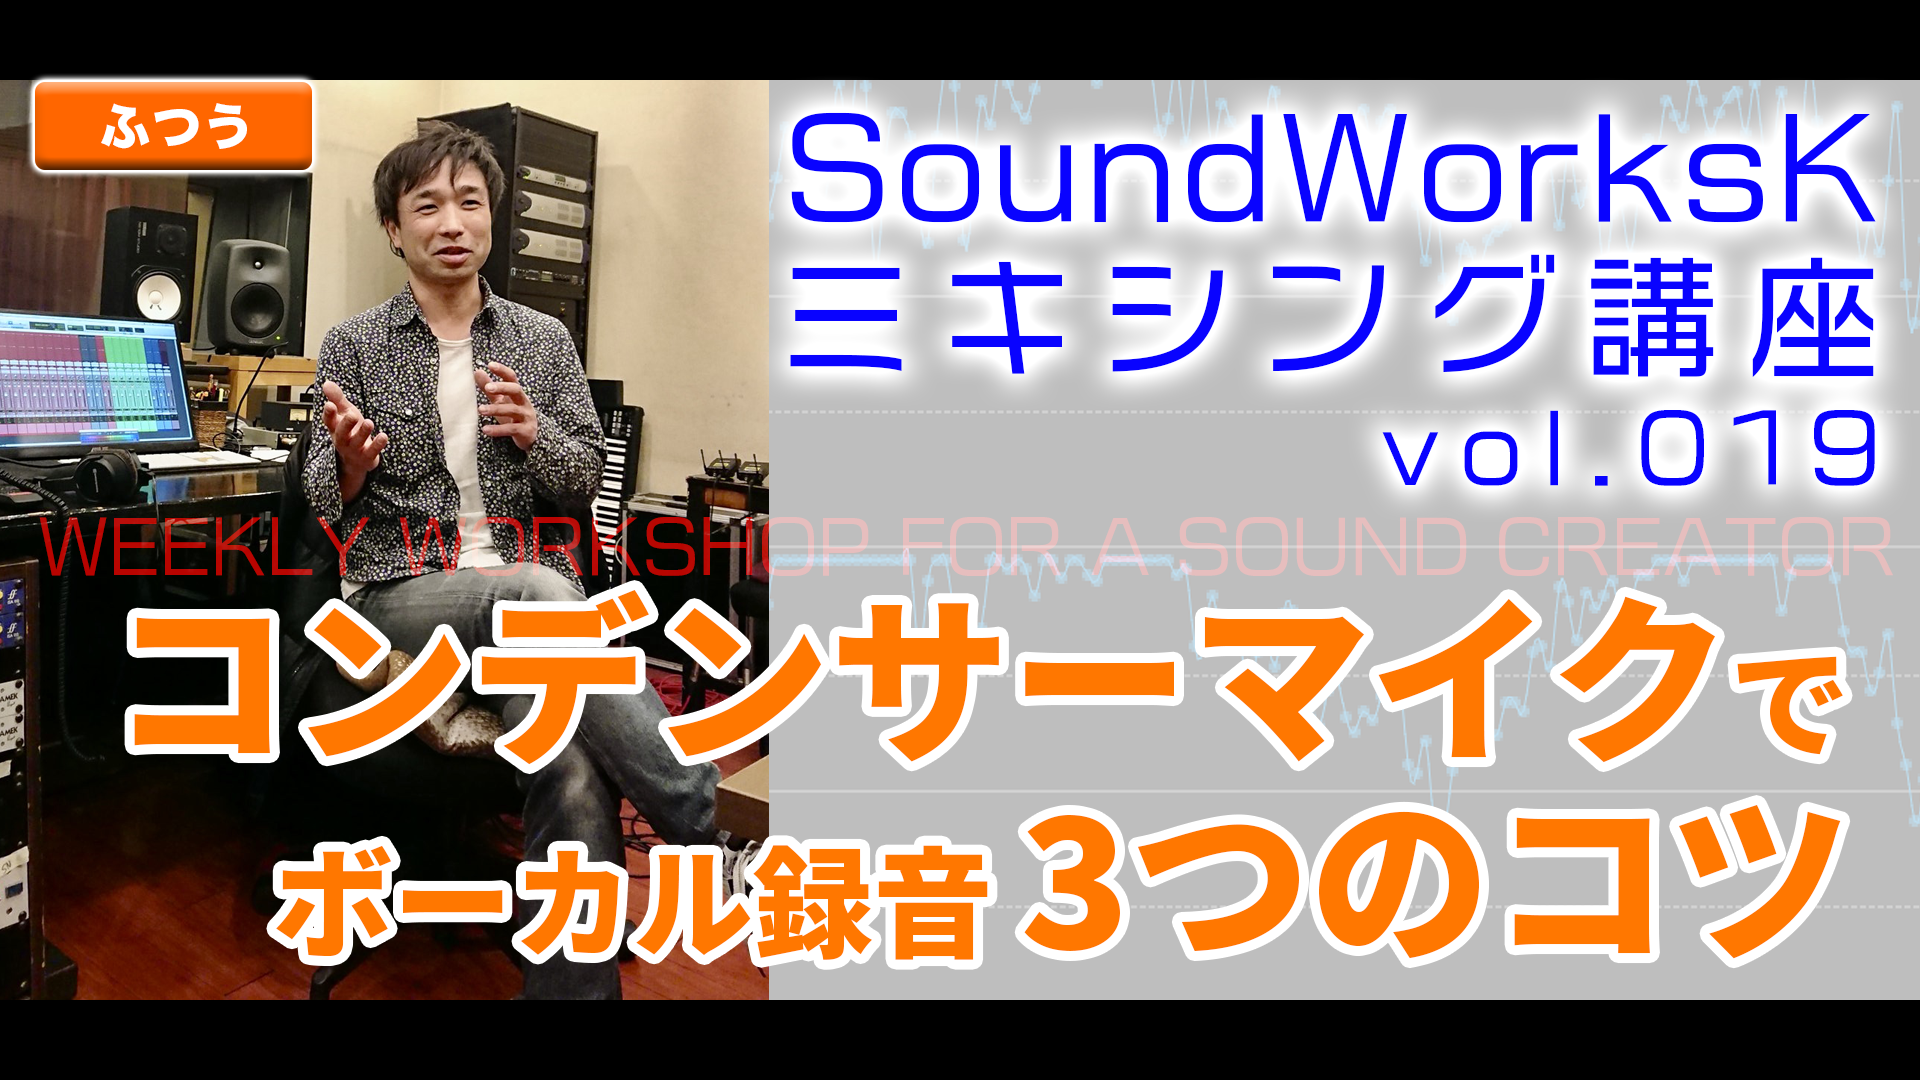 コンデンサーマイク いい音で歌を録る3つのコツ Vol 019 難しさ やさしい Soundworksk Website